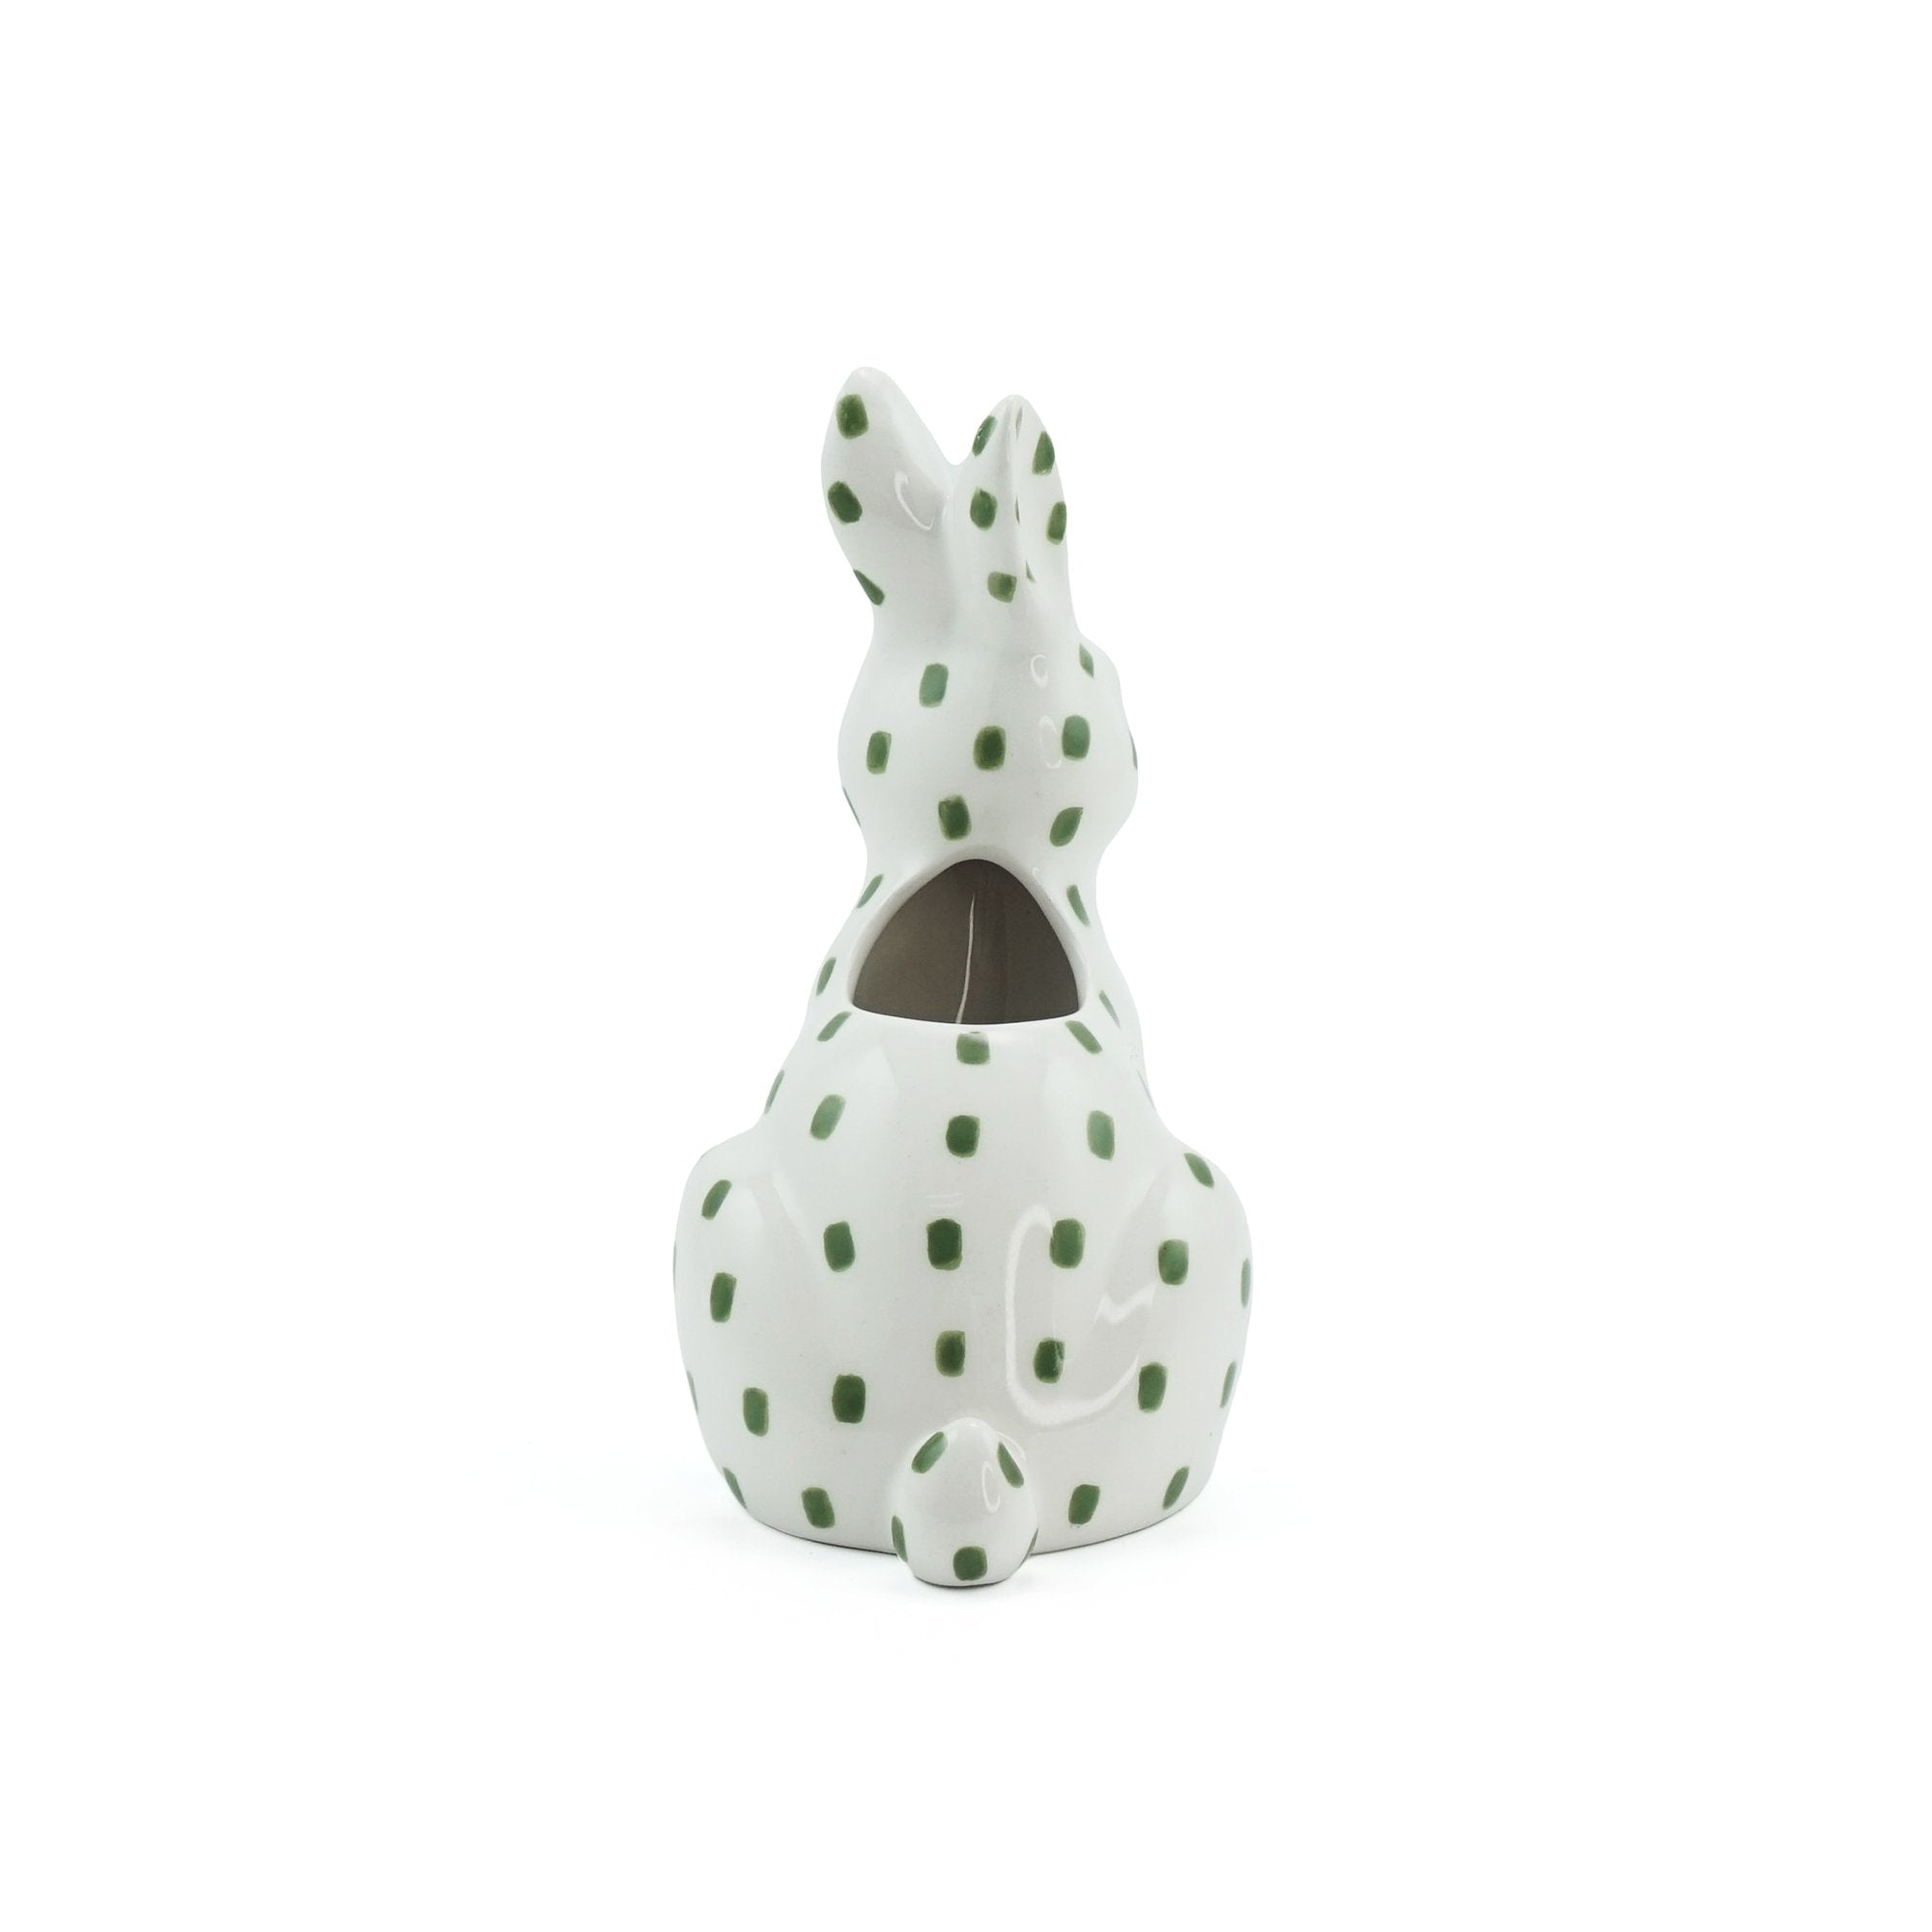 Vase Ceramic Shaped - Woodland Folk (Hare)